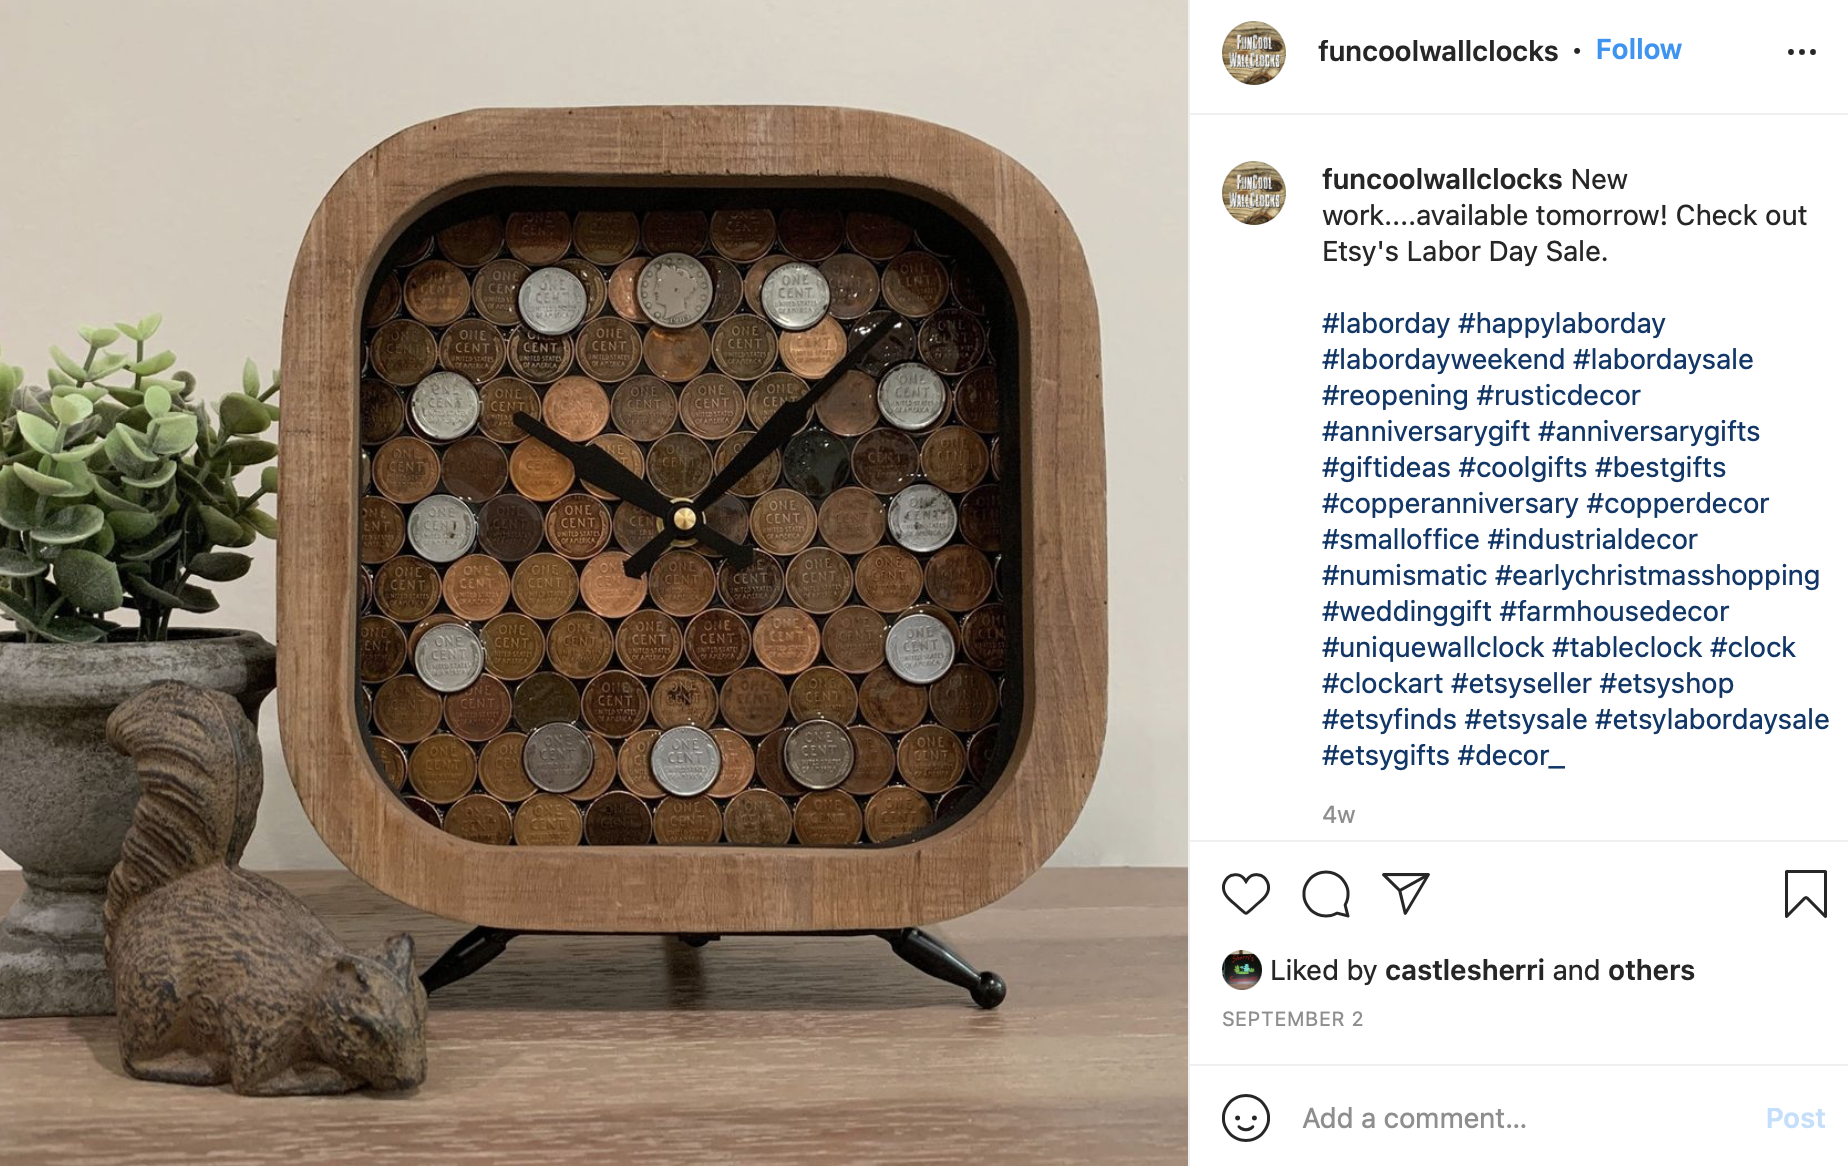 copper clock for wedding anniversary gift idea